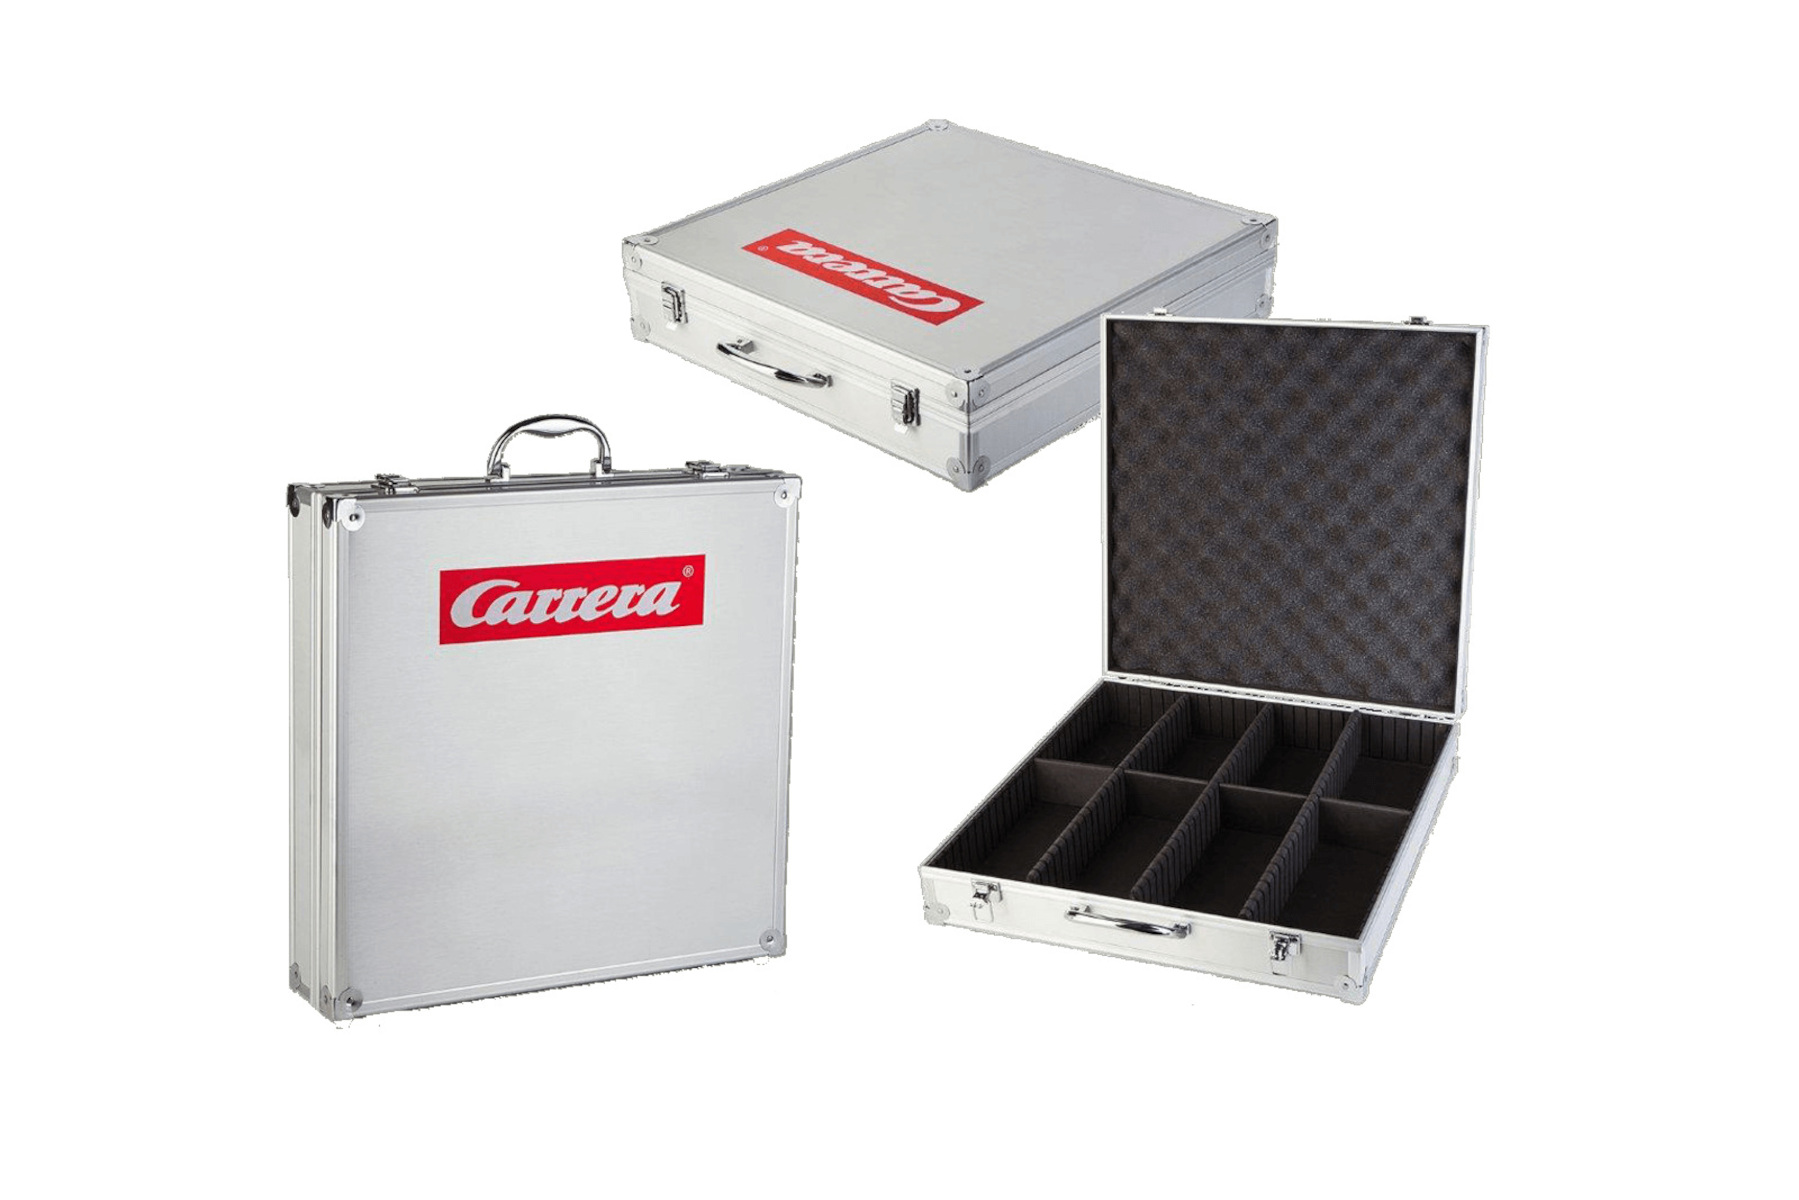 CARRERA Fahrzeugkoffer für Modelle 1:32 Aufbewahrungskoffer